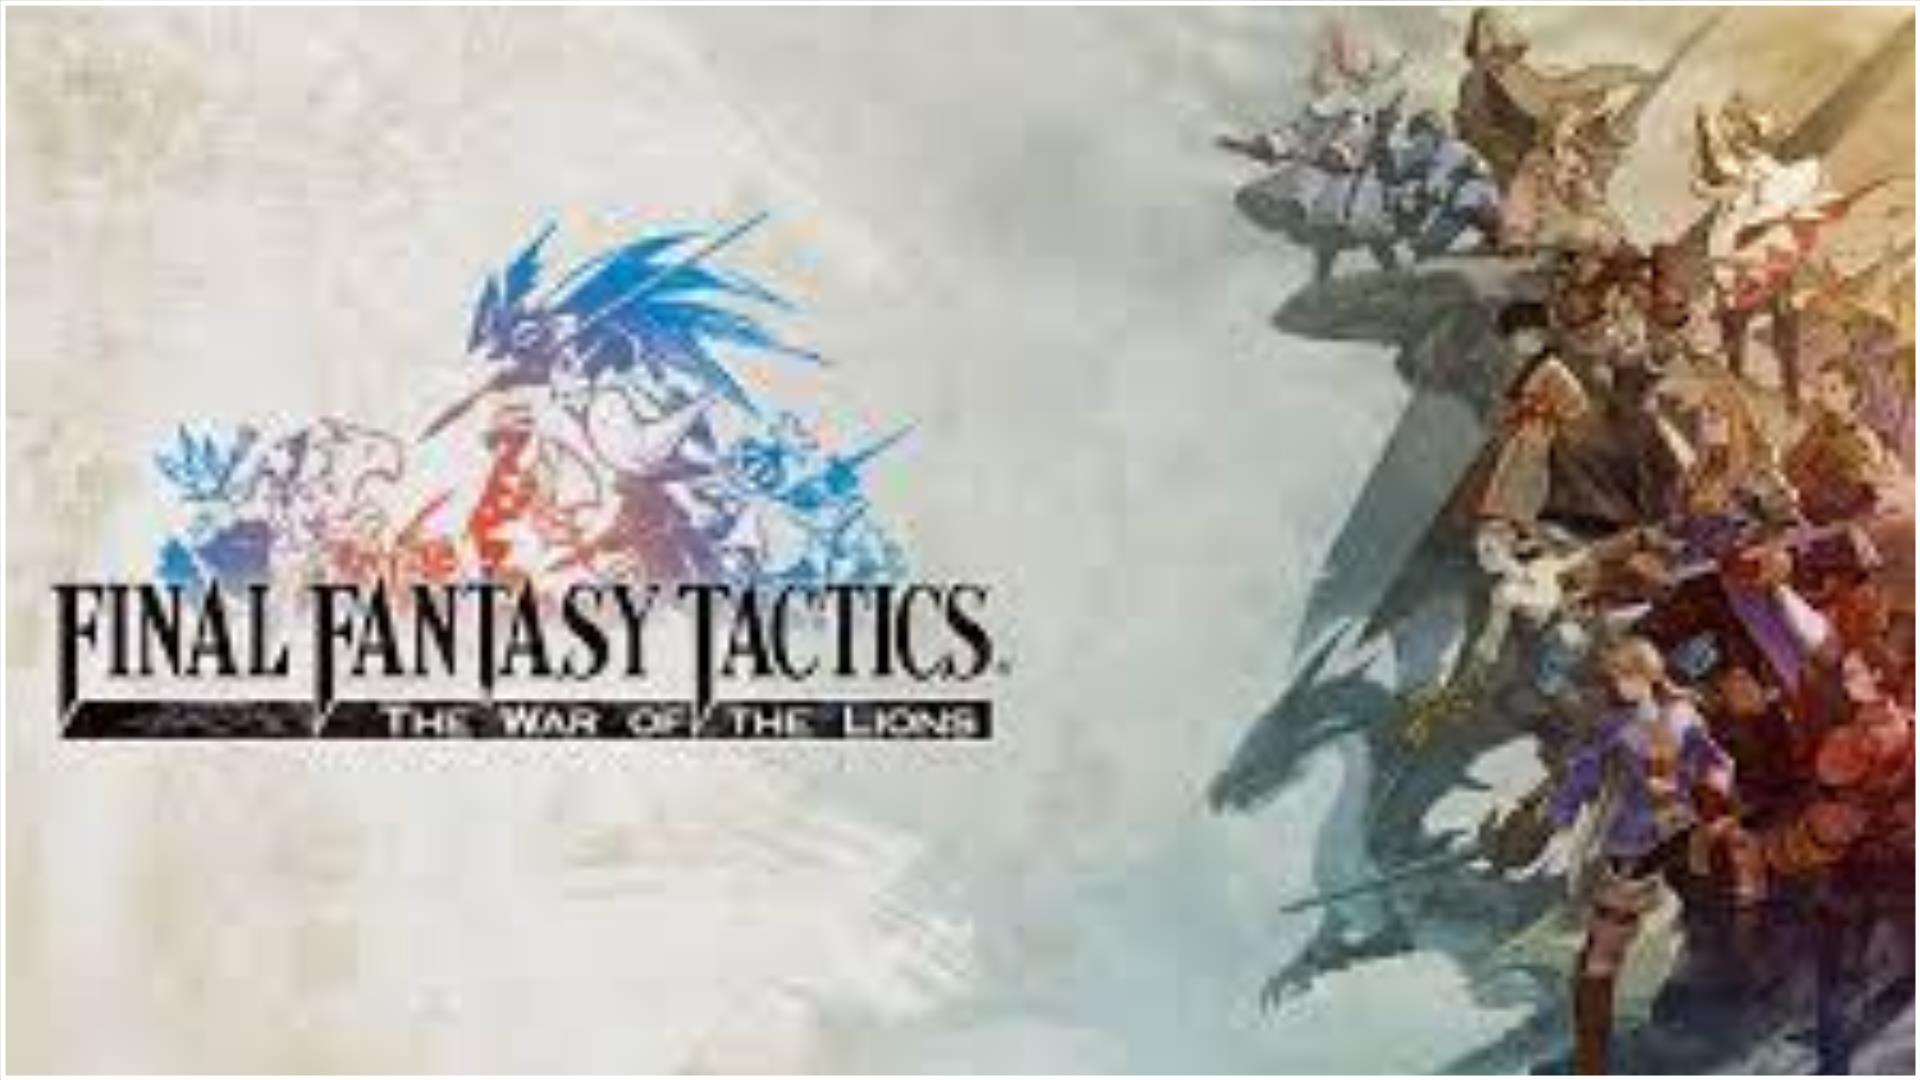 Semanada – Final Fantasy Tactics: The War of the Lions (PSP e iOS)